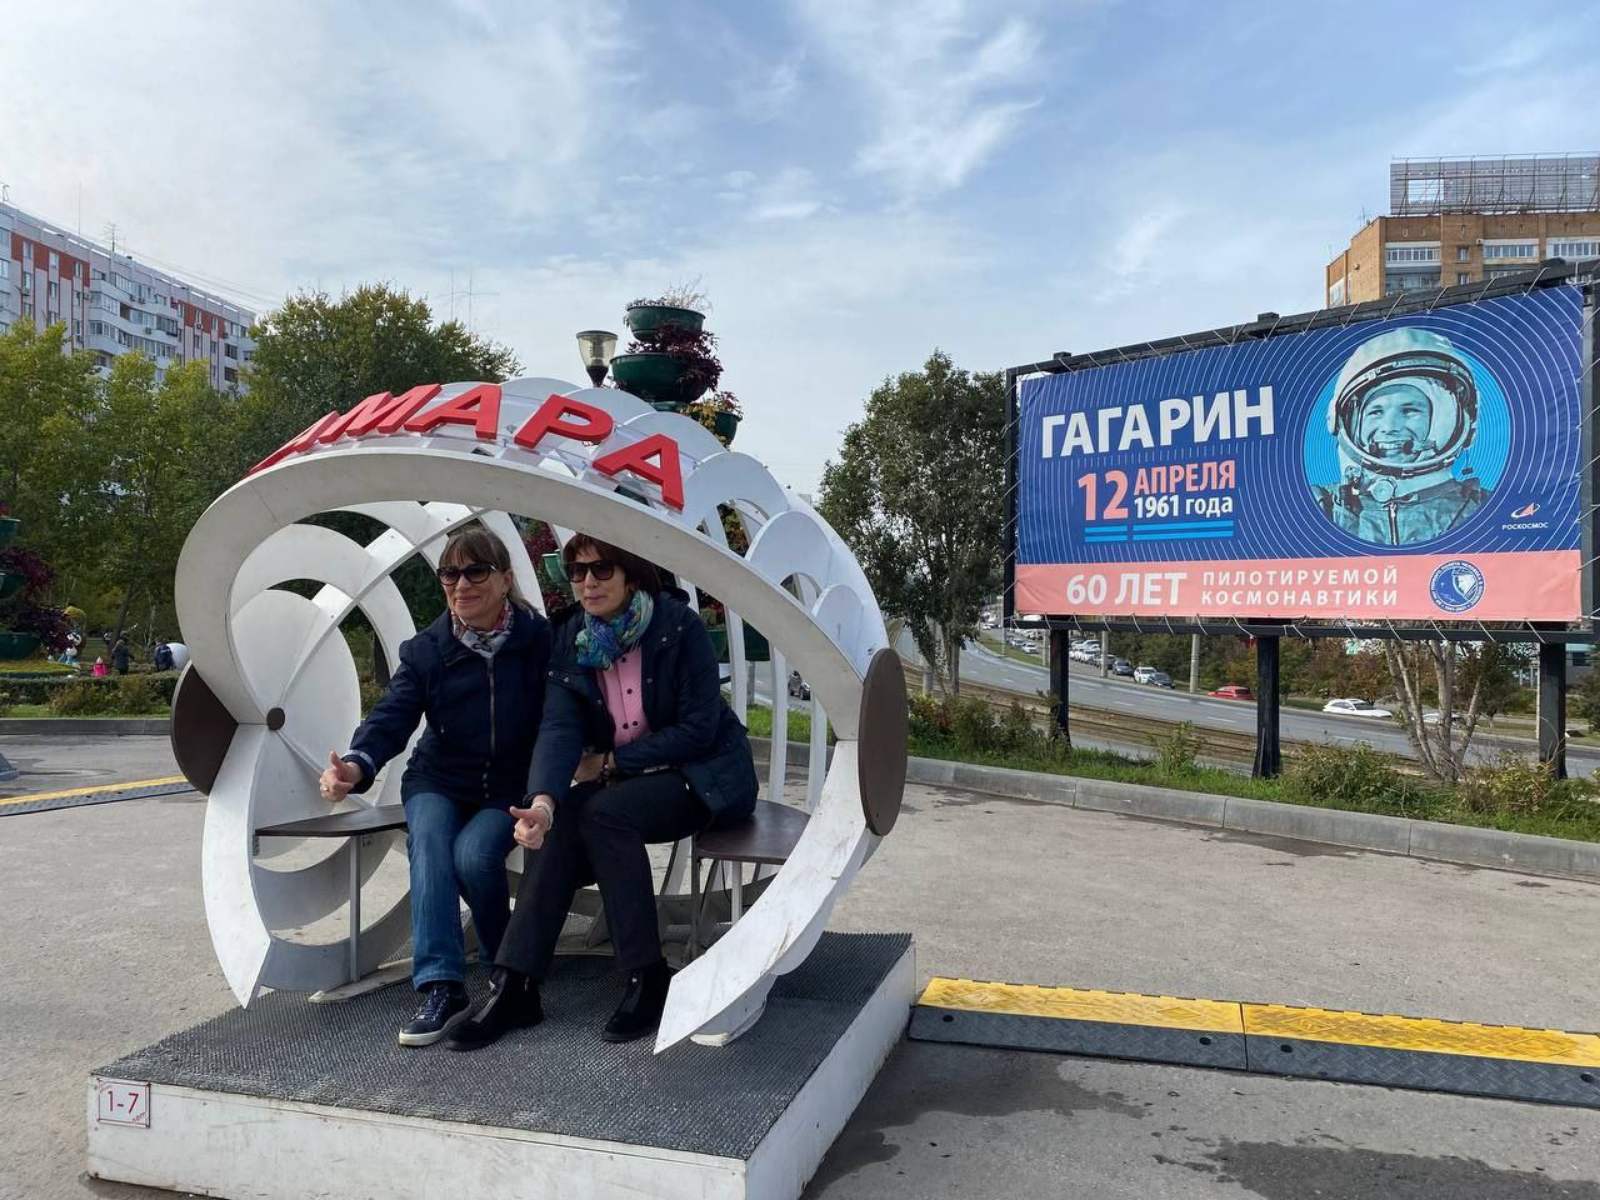 Представители сферы российского турбизнеса побывали на обзорной экскурсии в Самаре